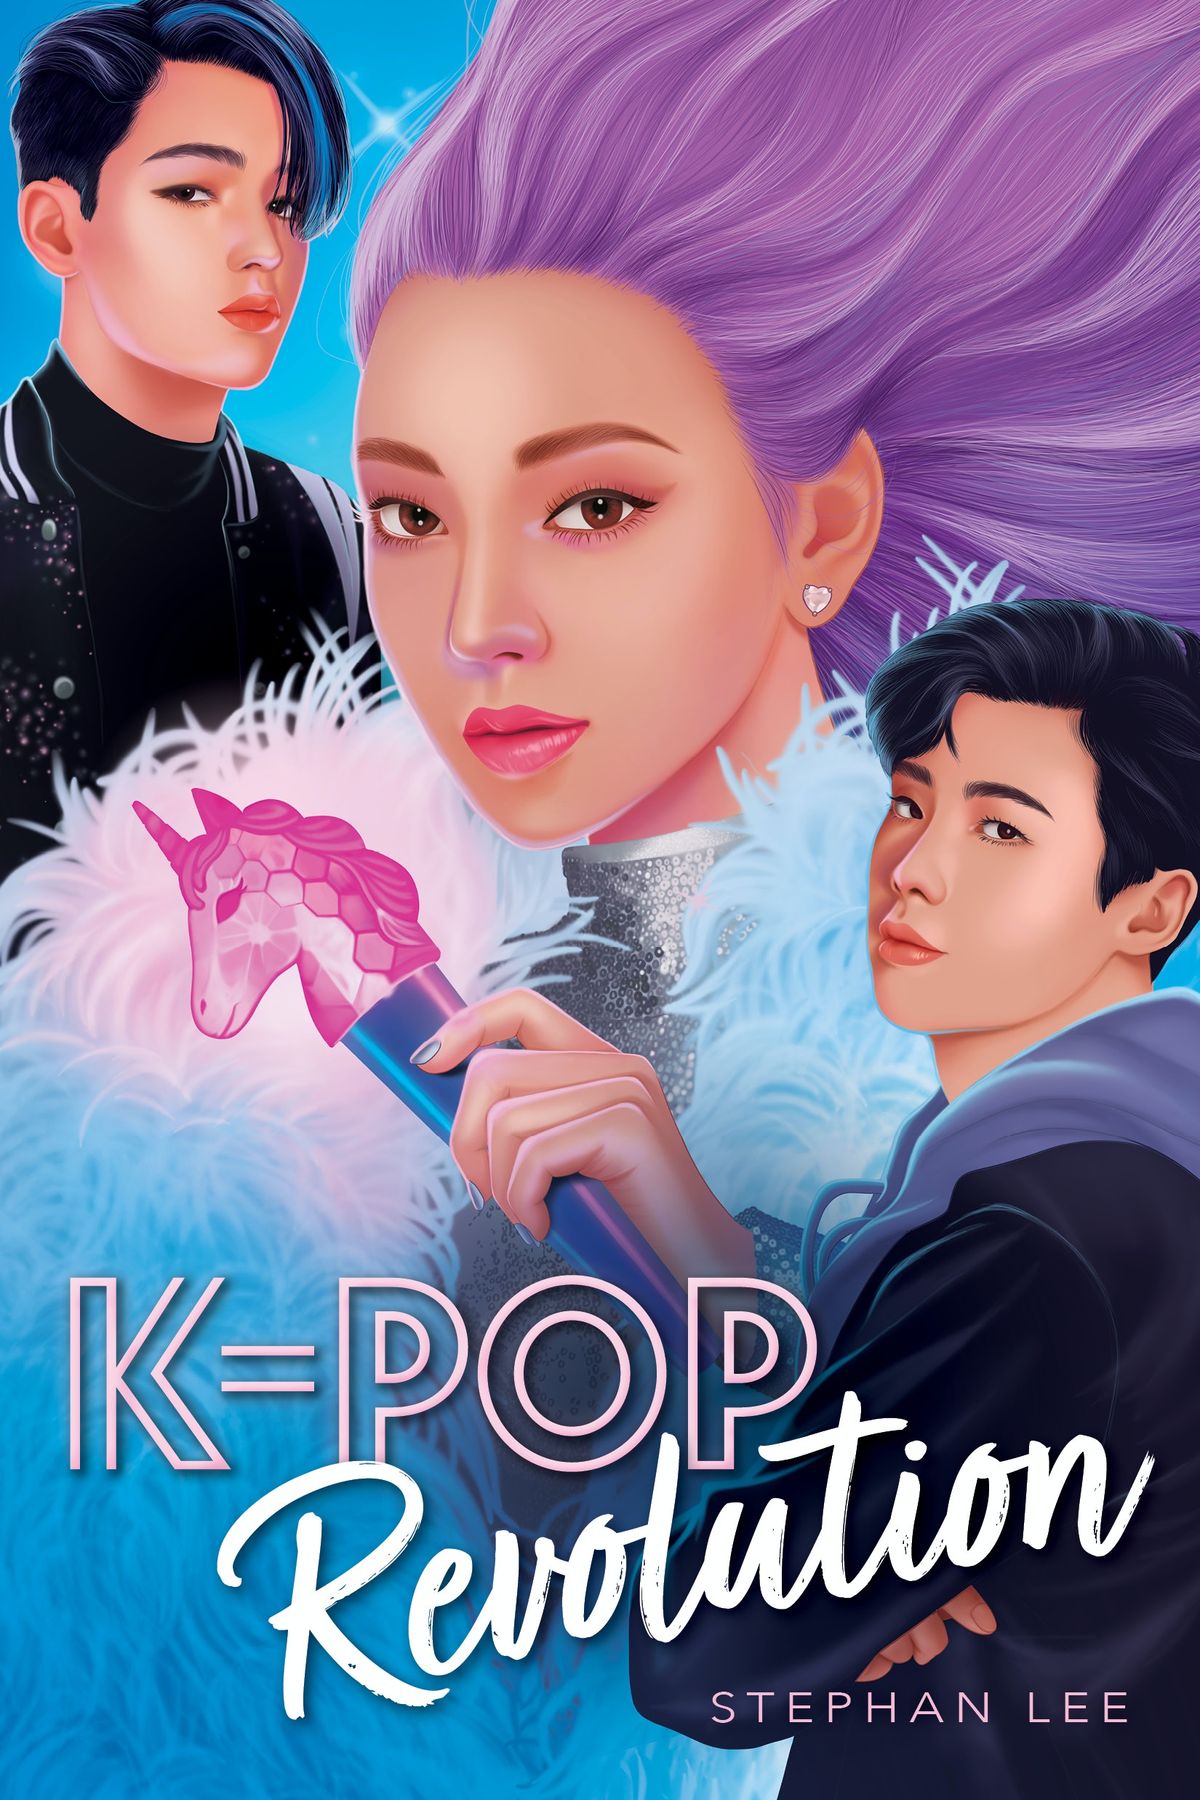 Eche un vistazo a la secuela confidencial de K-Pop de Stephan Lee, K-Pop Revolution